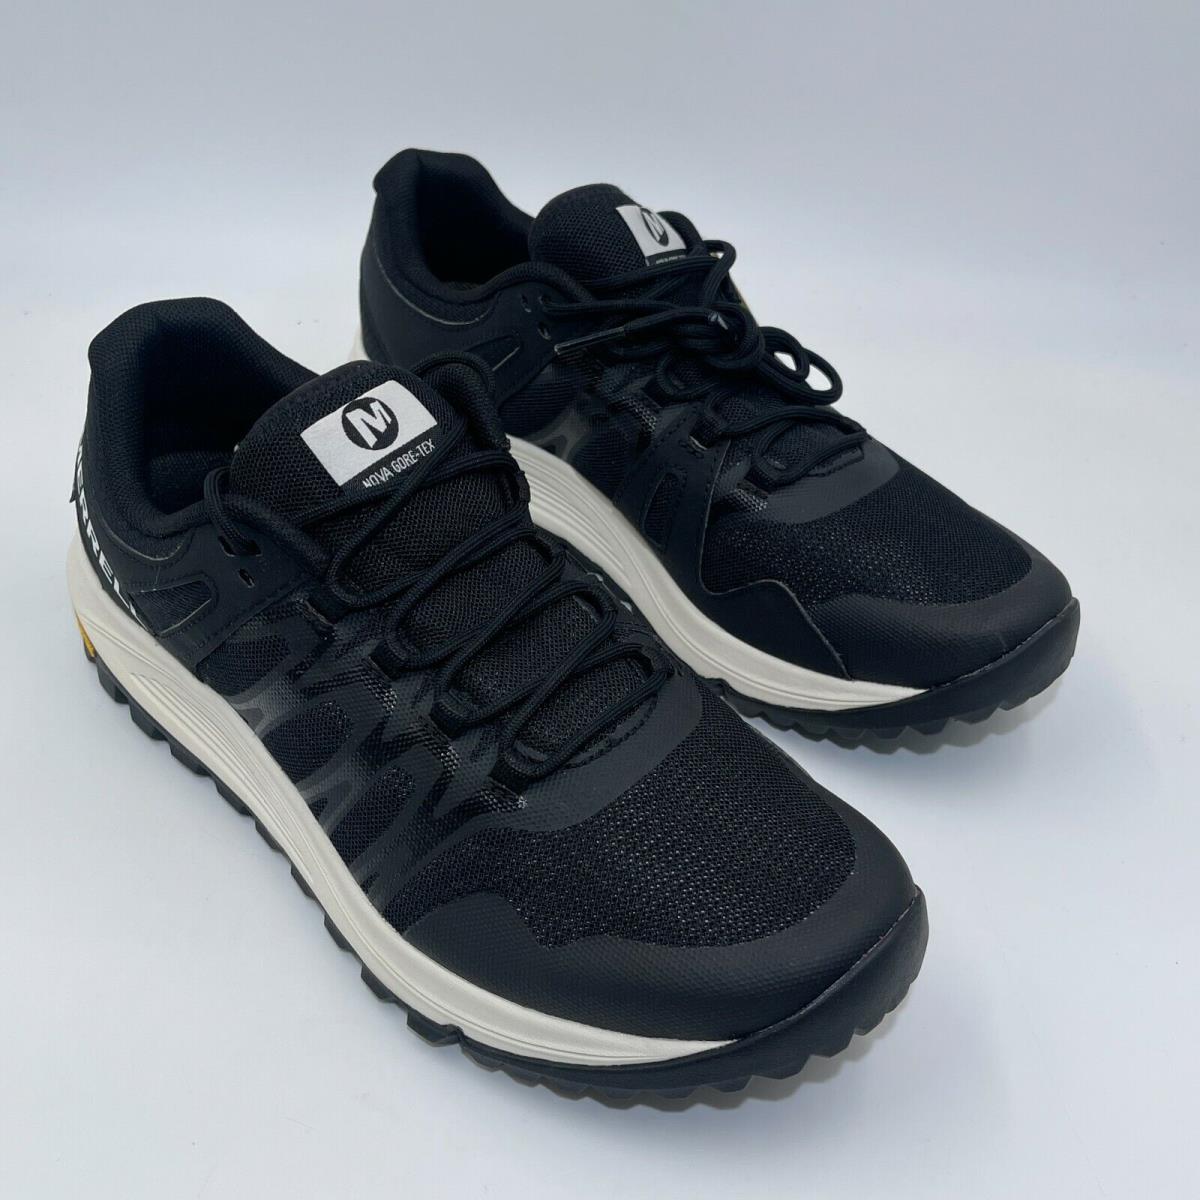 Merrell Nova Gtx Black Running Shoe J066345 Men`s Size 7.5